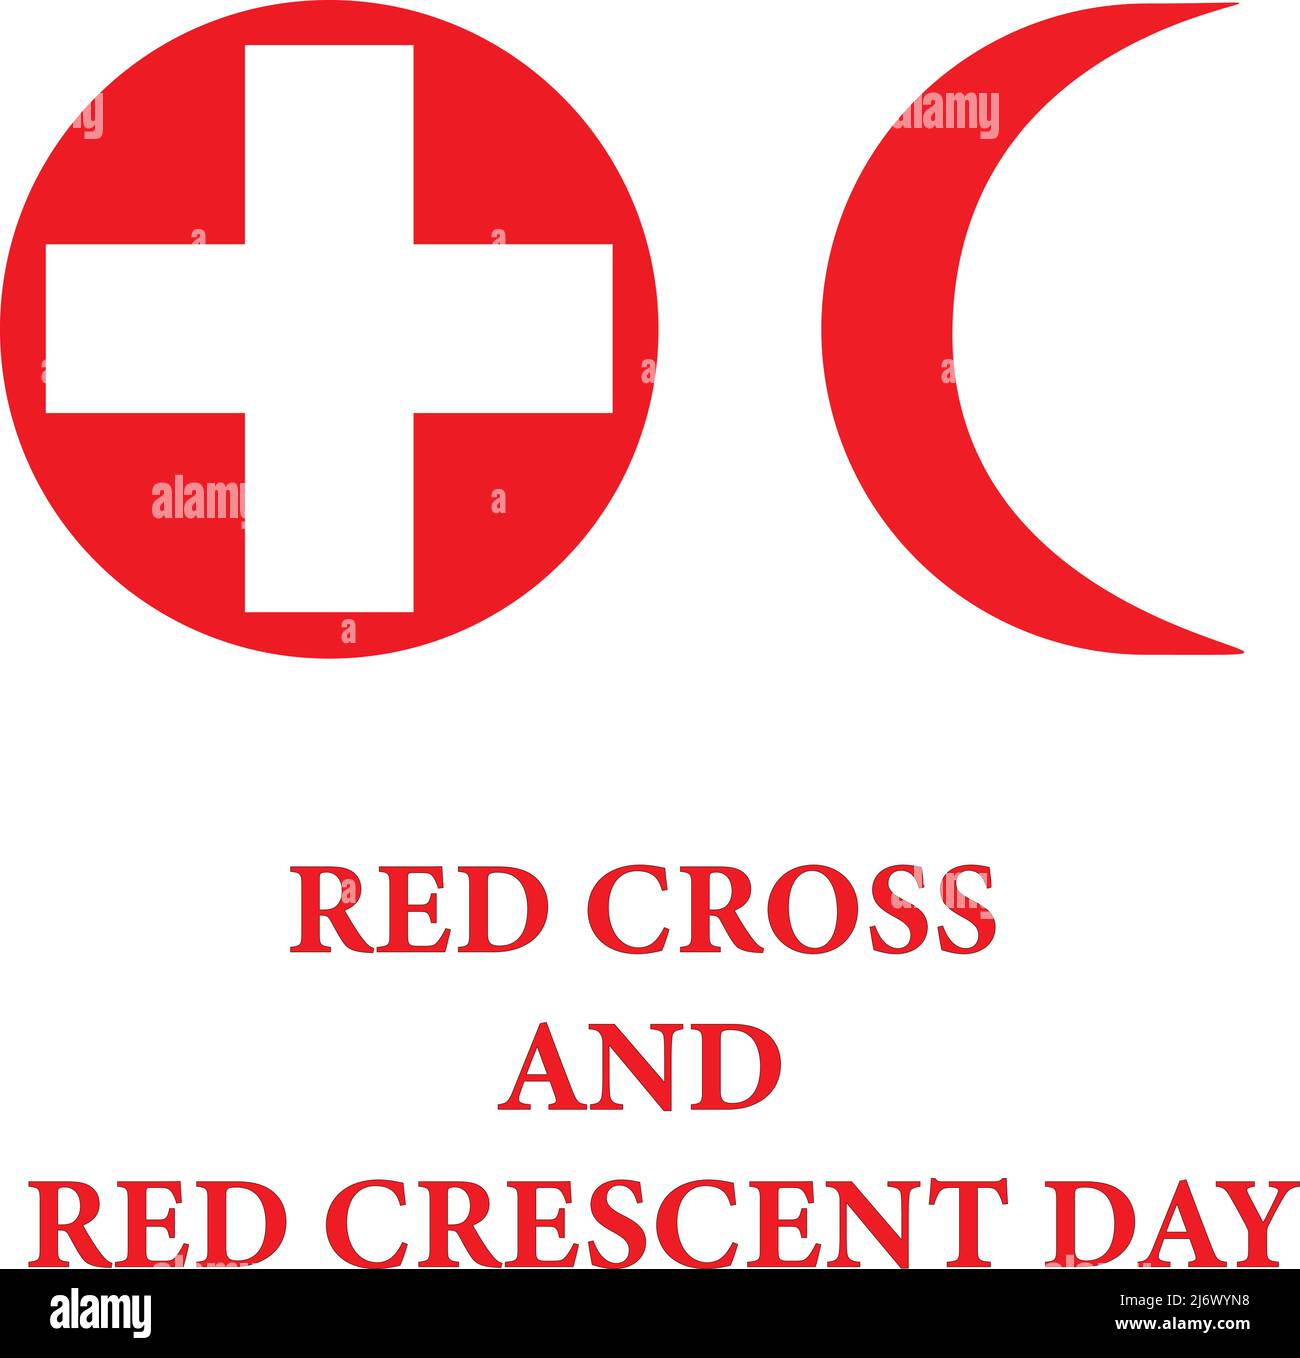 Welttag des Roten Kreuzes und des Roten Halbmonds. Mai 8. Vektorgrafik für Aktien Stock Vektor